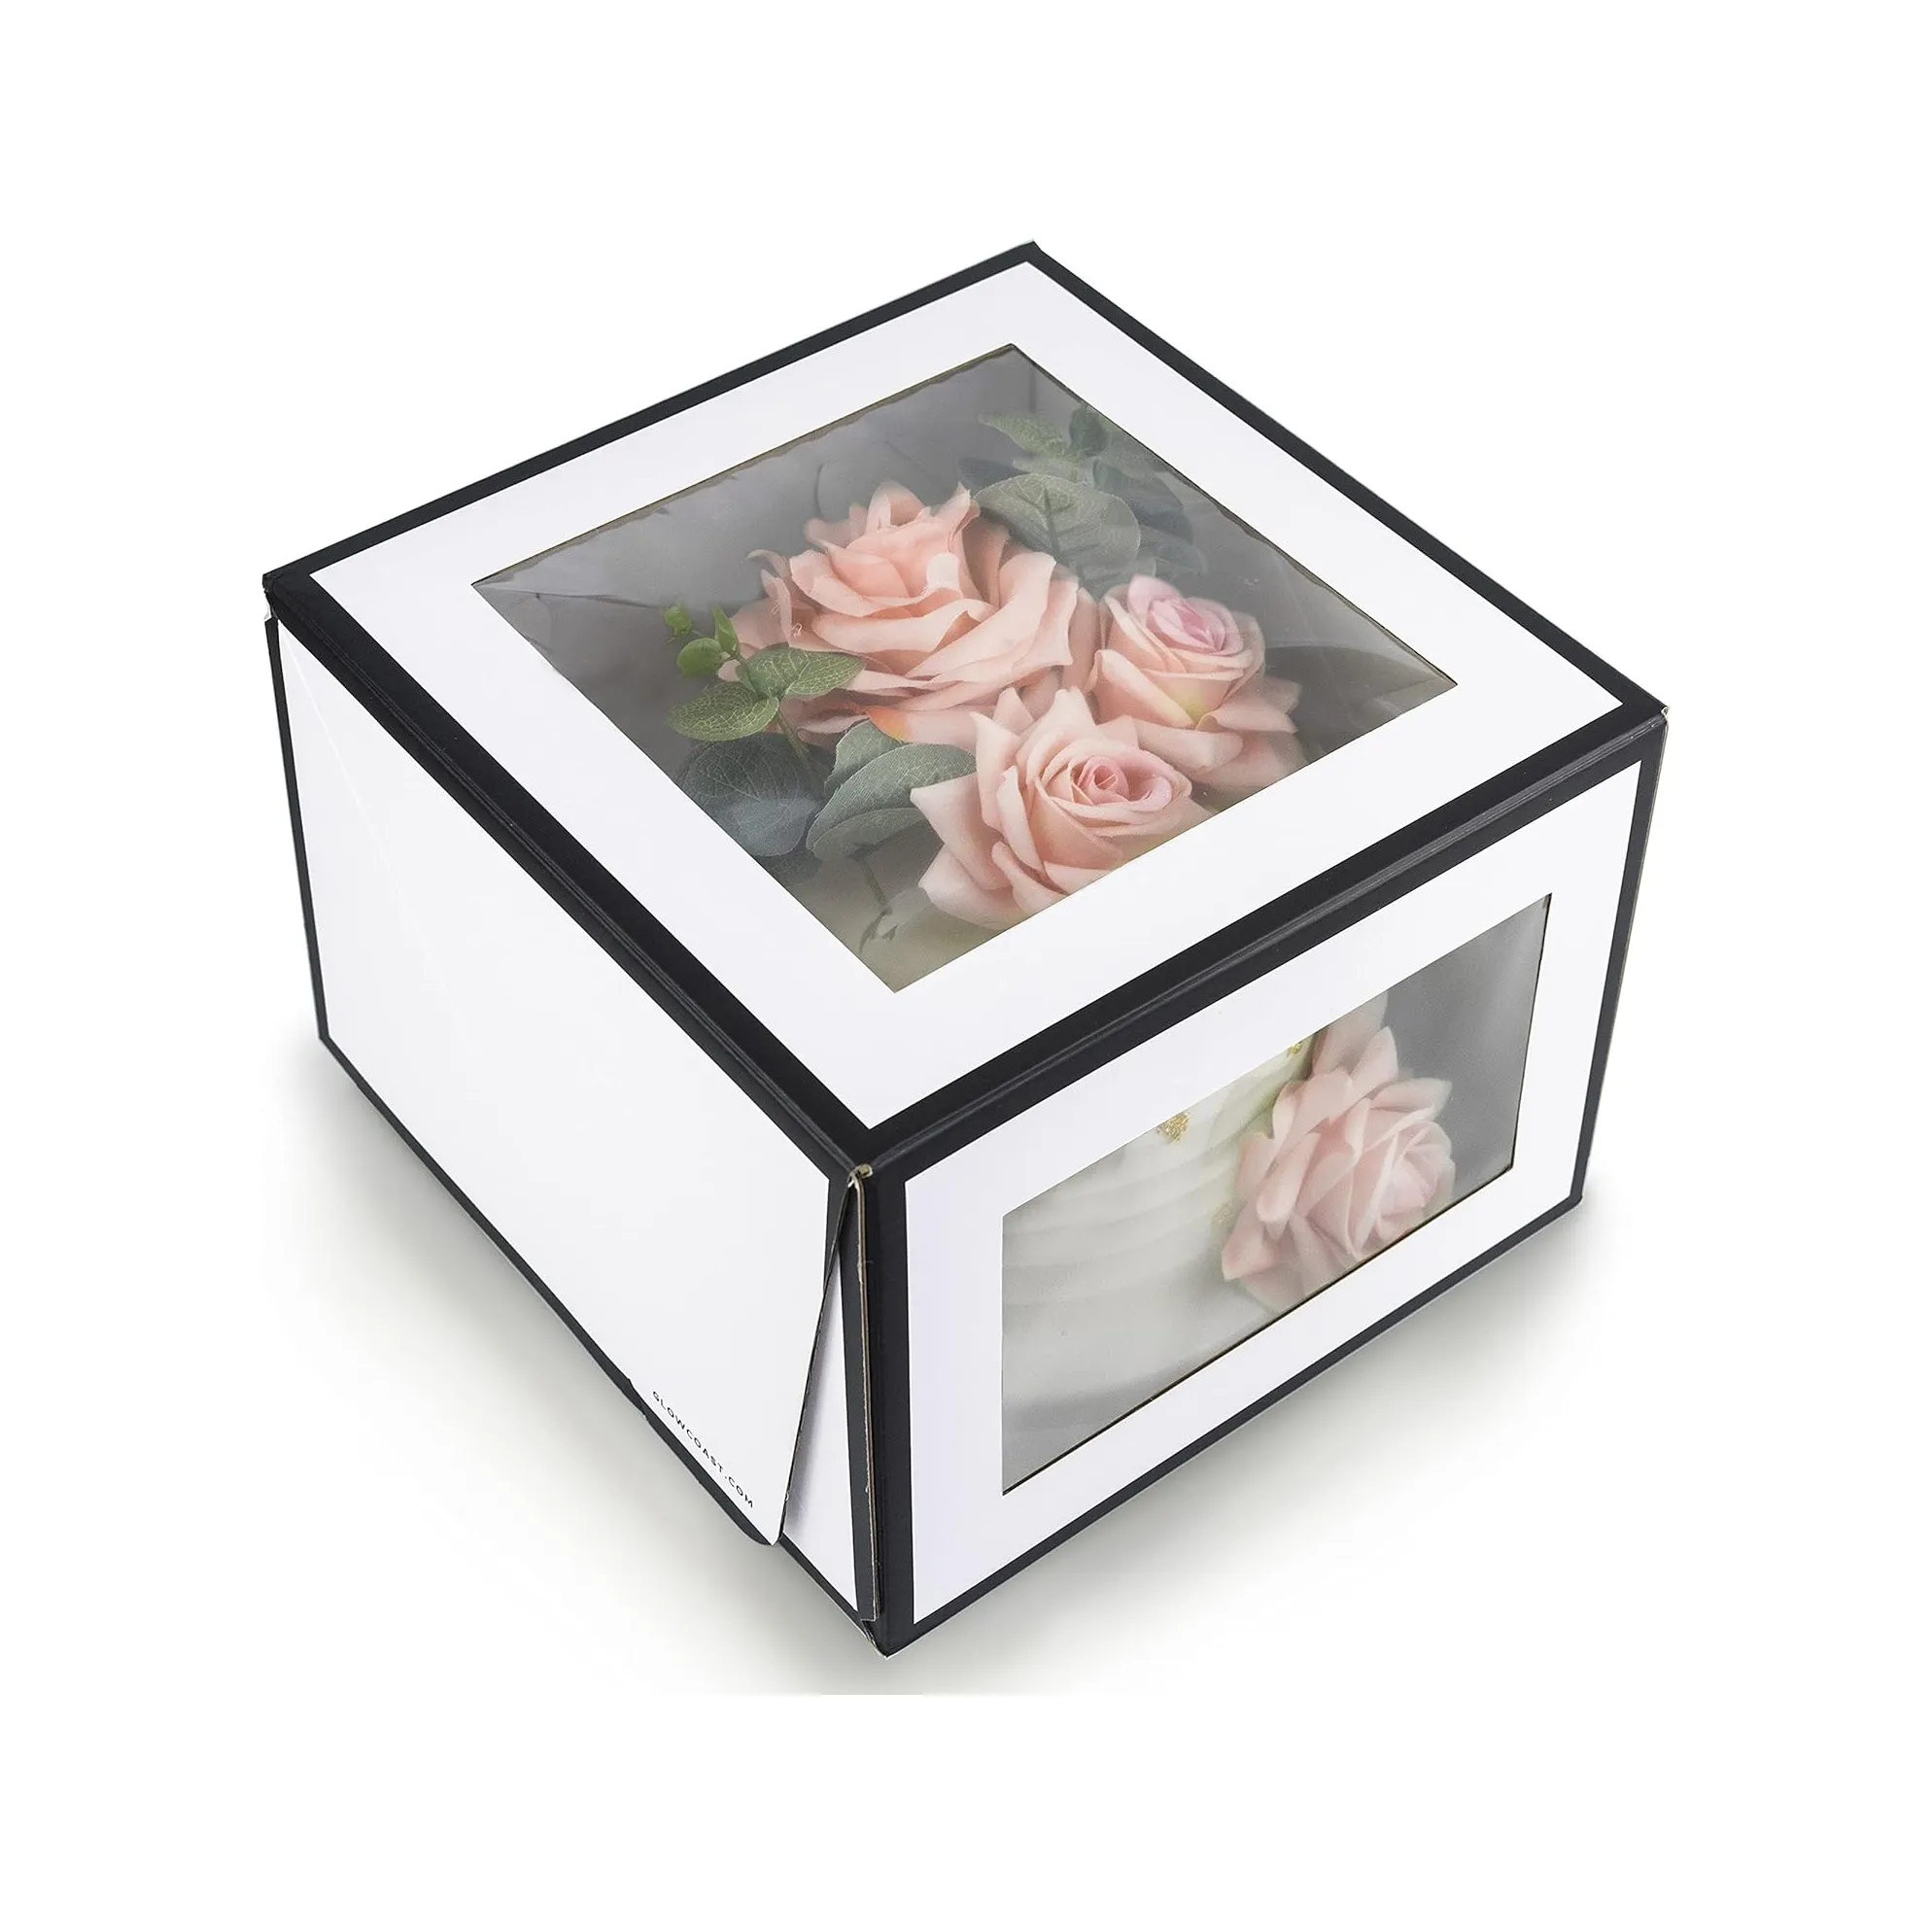 صندوق ورقي طازج مزود بحافة سوداء فريدة متميزة بجودة احترافية لتغليف الزهور مربع الشكل صندوق كعك كبير شفاف مقاس 8 بوصات